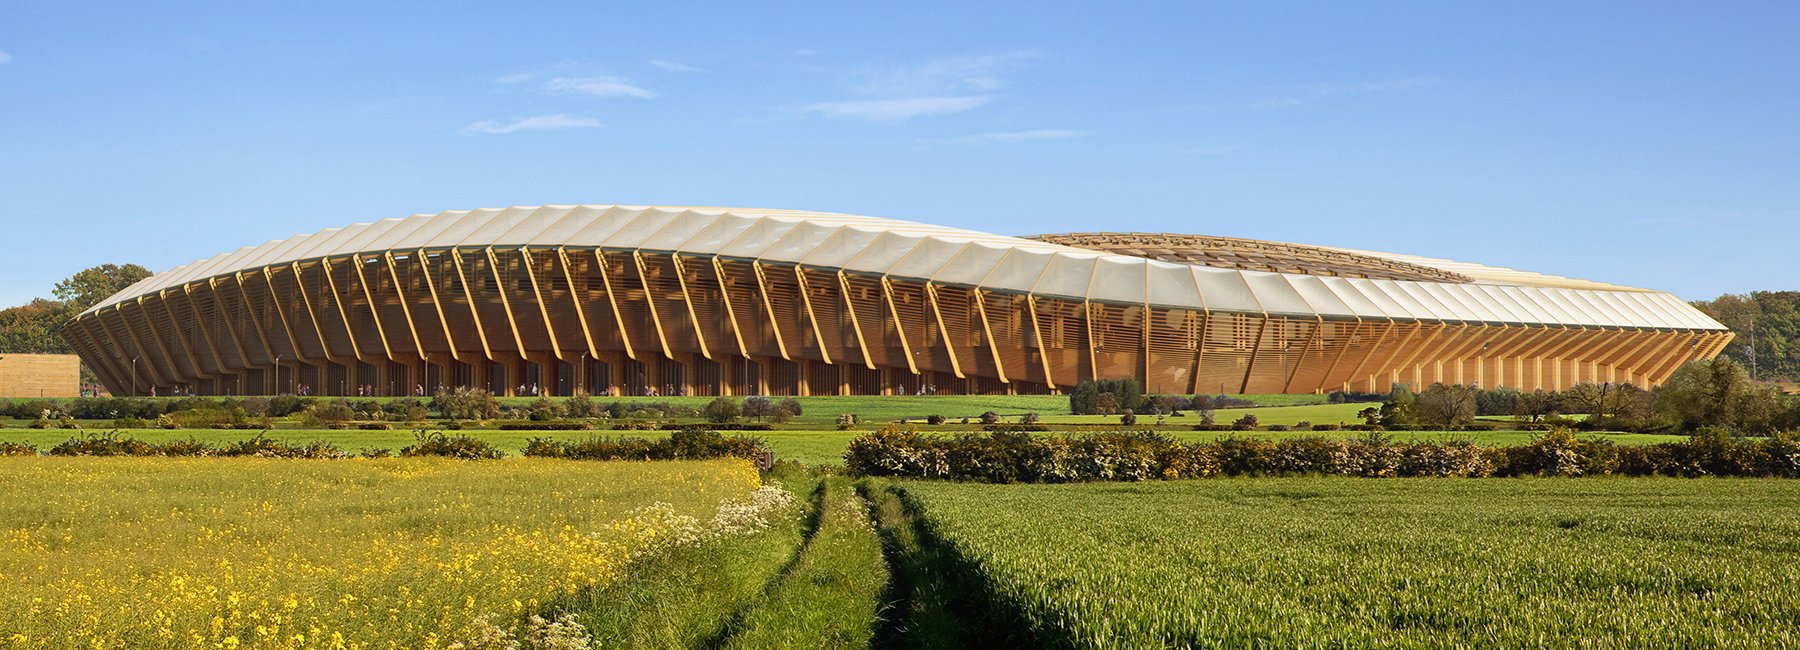 世界上第一个全木体育场---扎哈·哈迪德建筑事务所